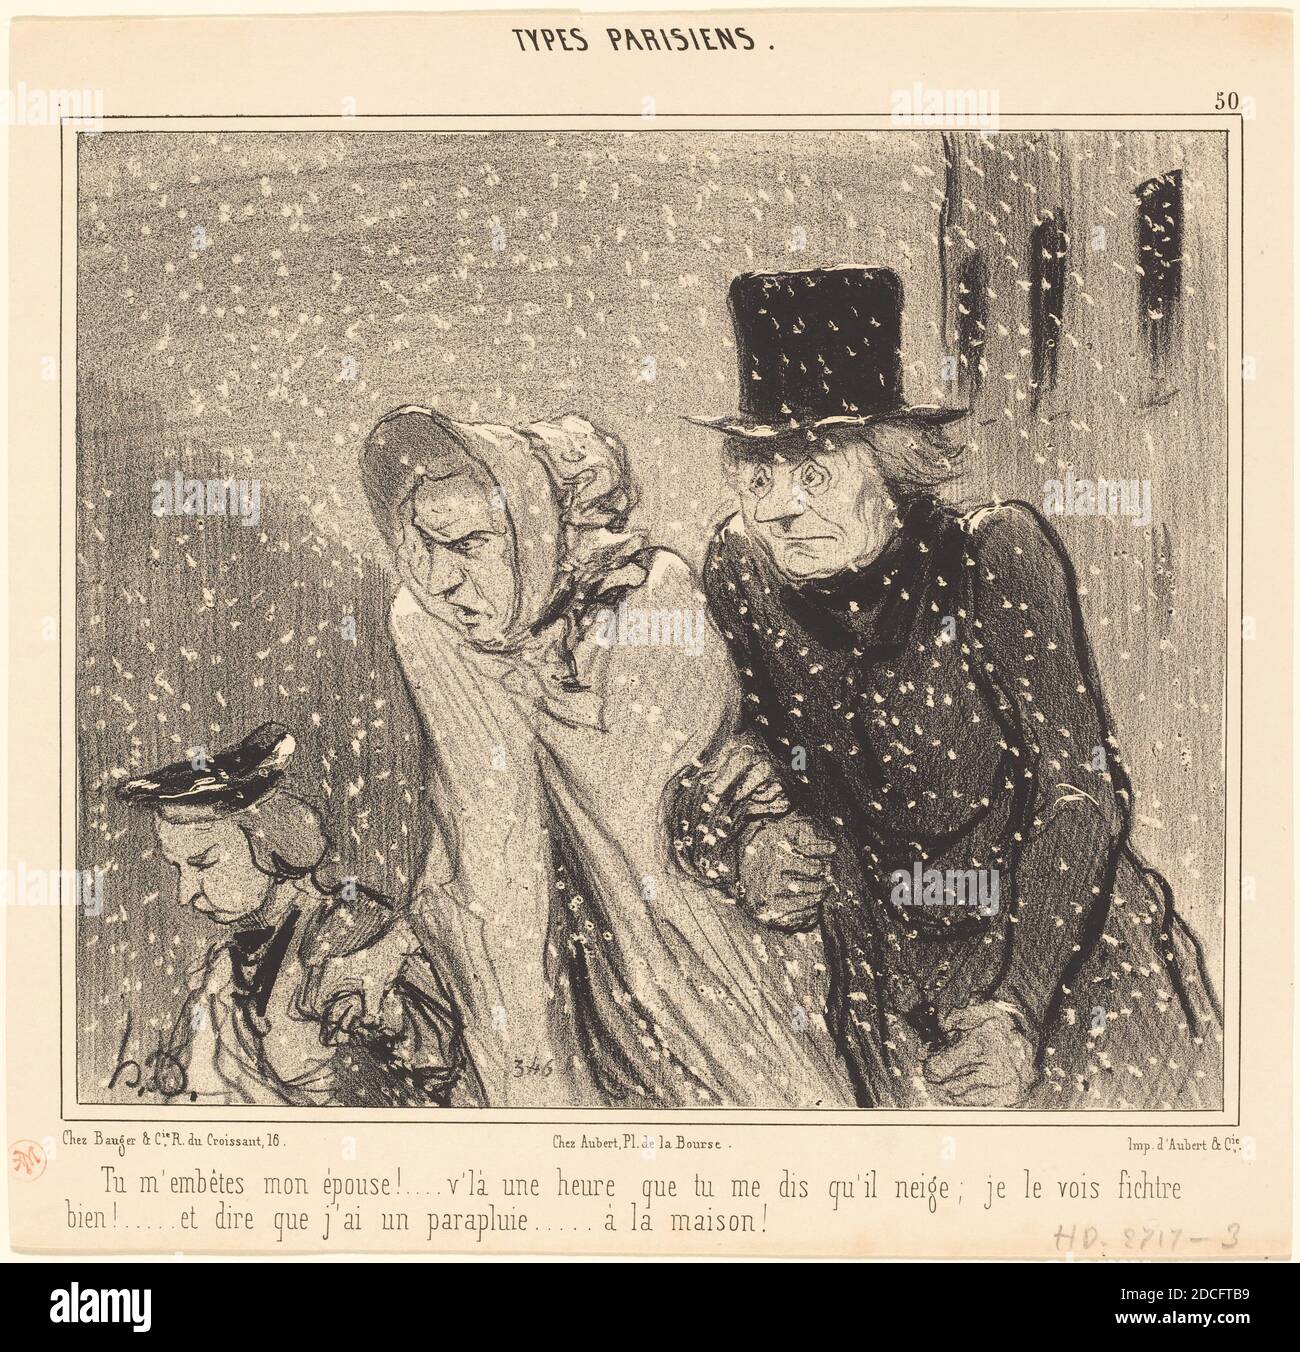 Honoré Daumier, (Künstler), französisch, 1808 - 1879, TU m'embêtes, mon épouse!... V'la une heure..., types Parisiens: pl. 50, (Serie), 1843, Lithographie Stockfoto